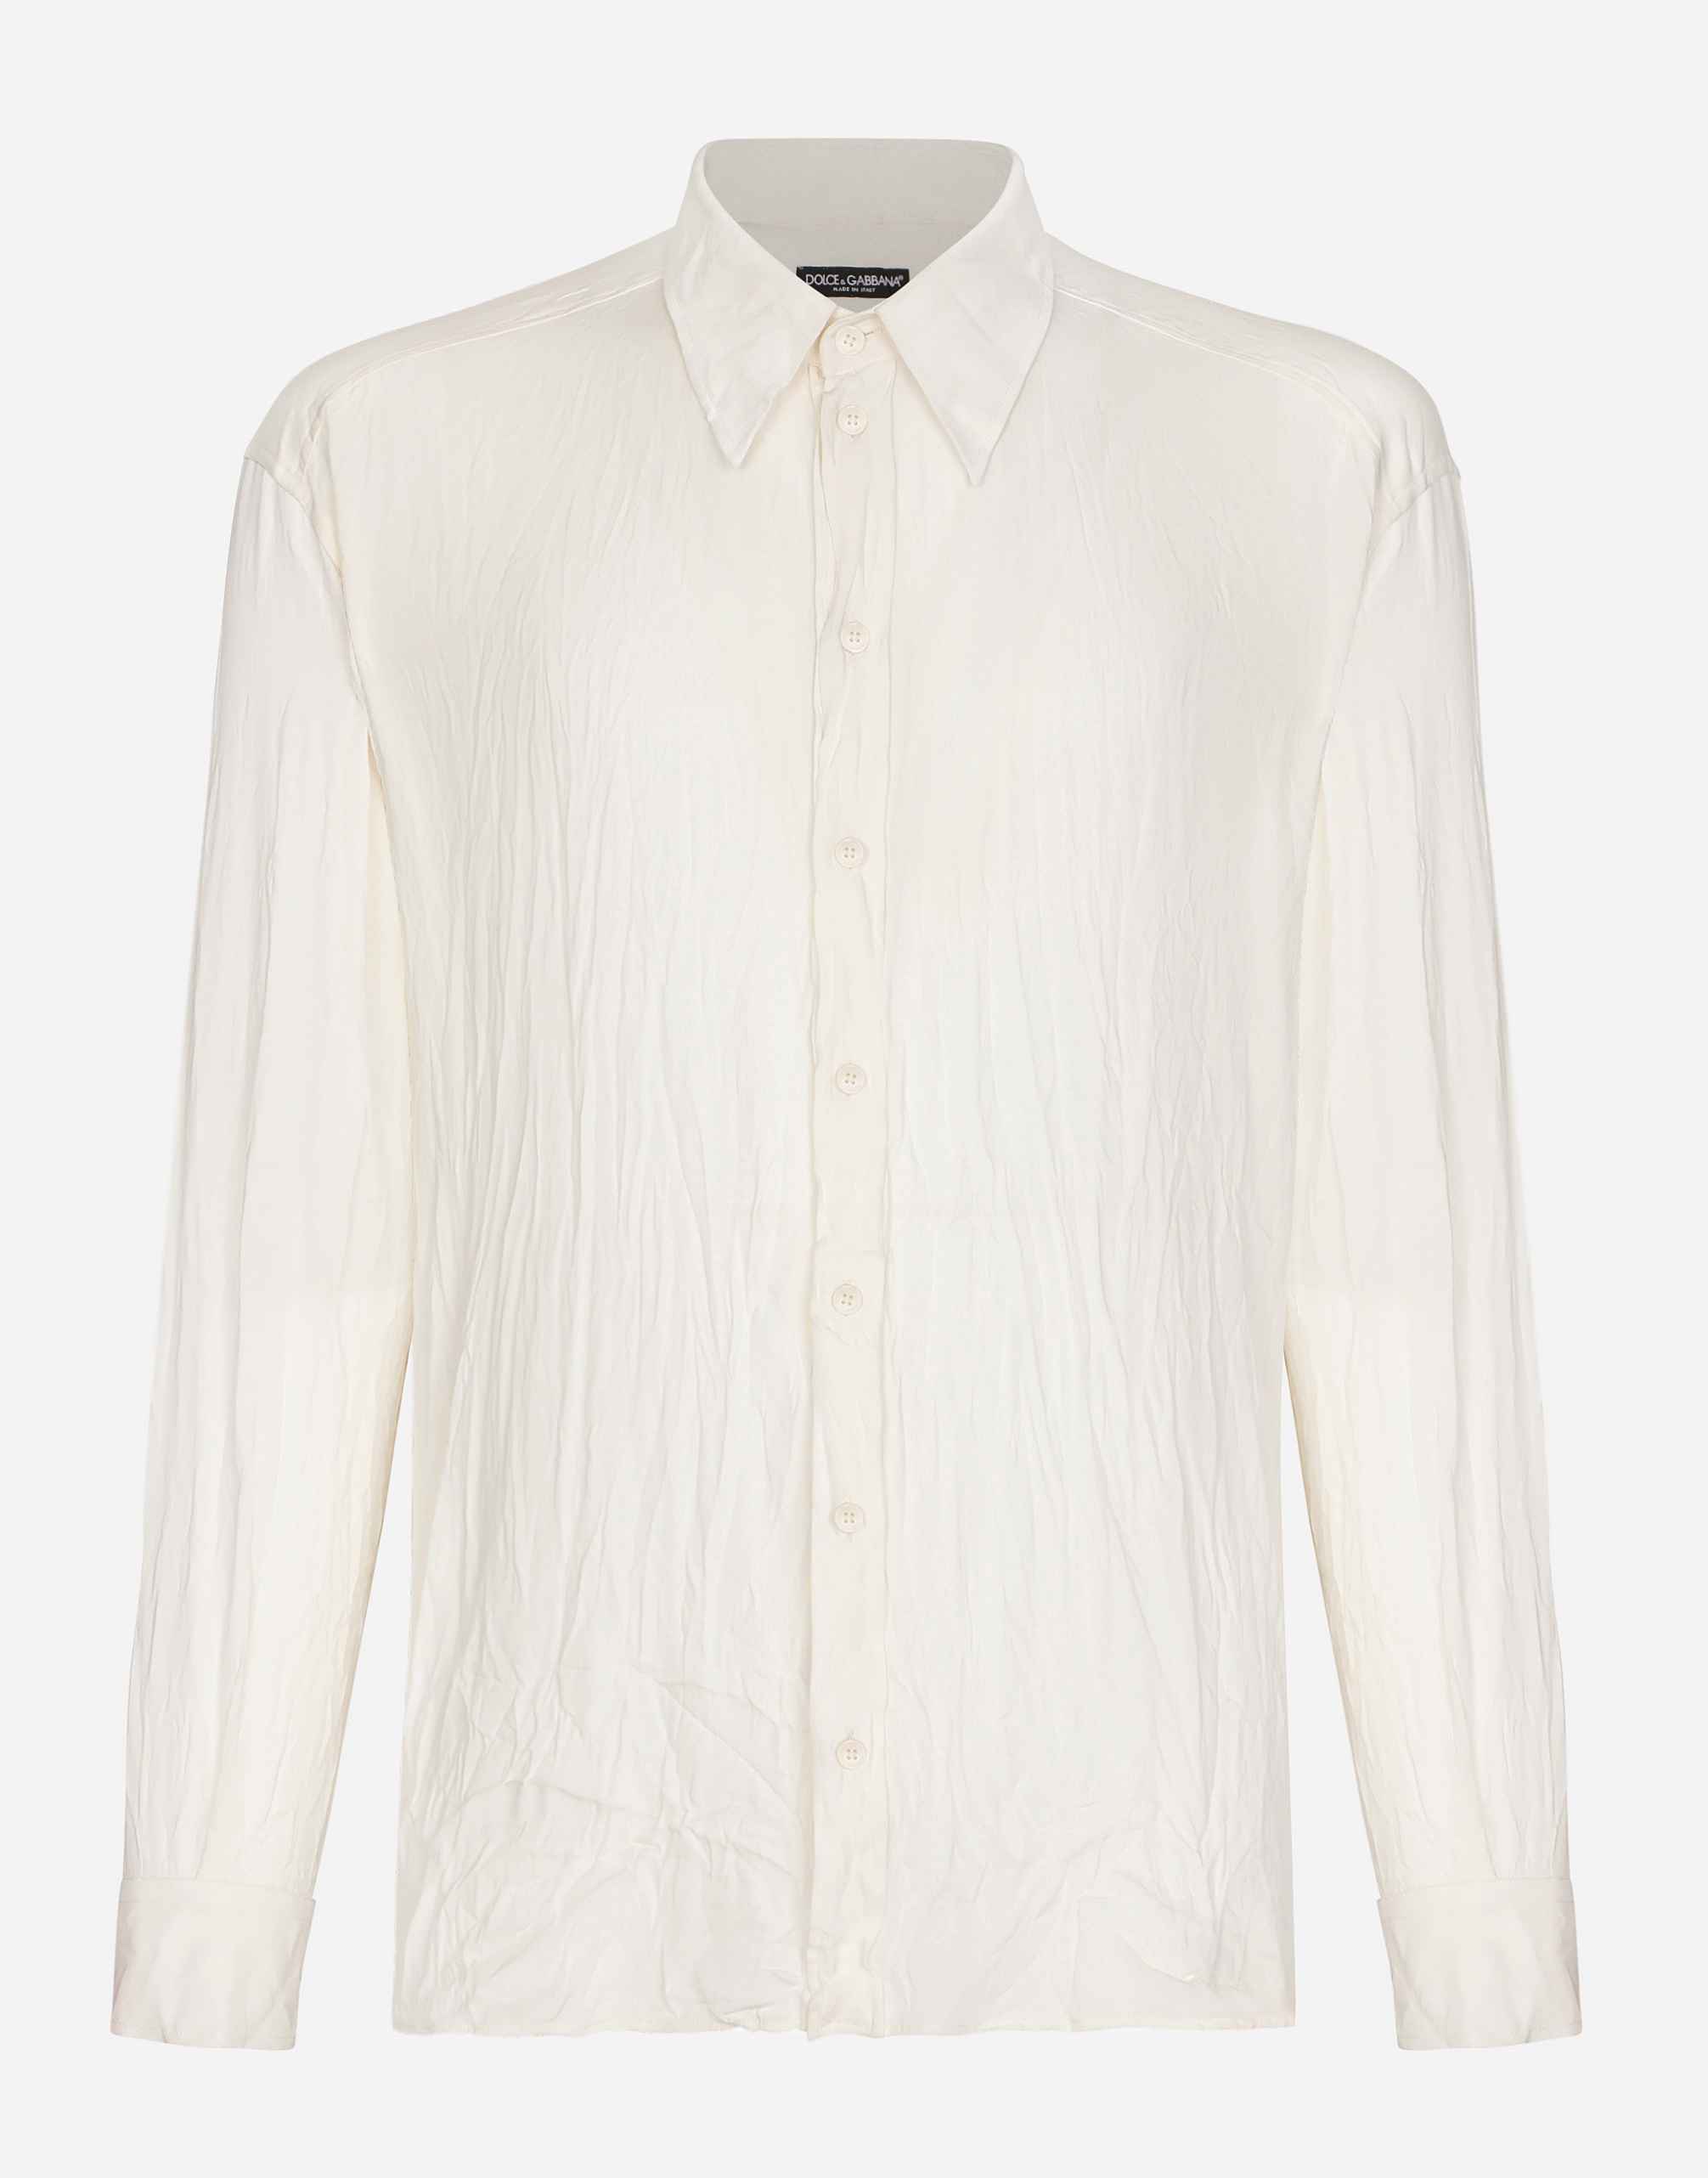 Dolce & Gabbana Man Shirts In White